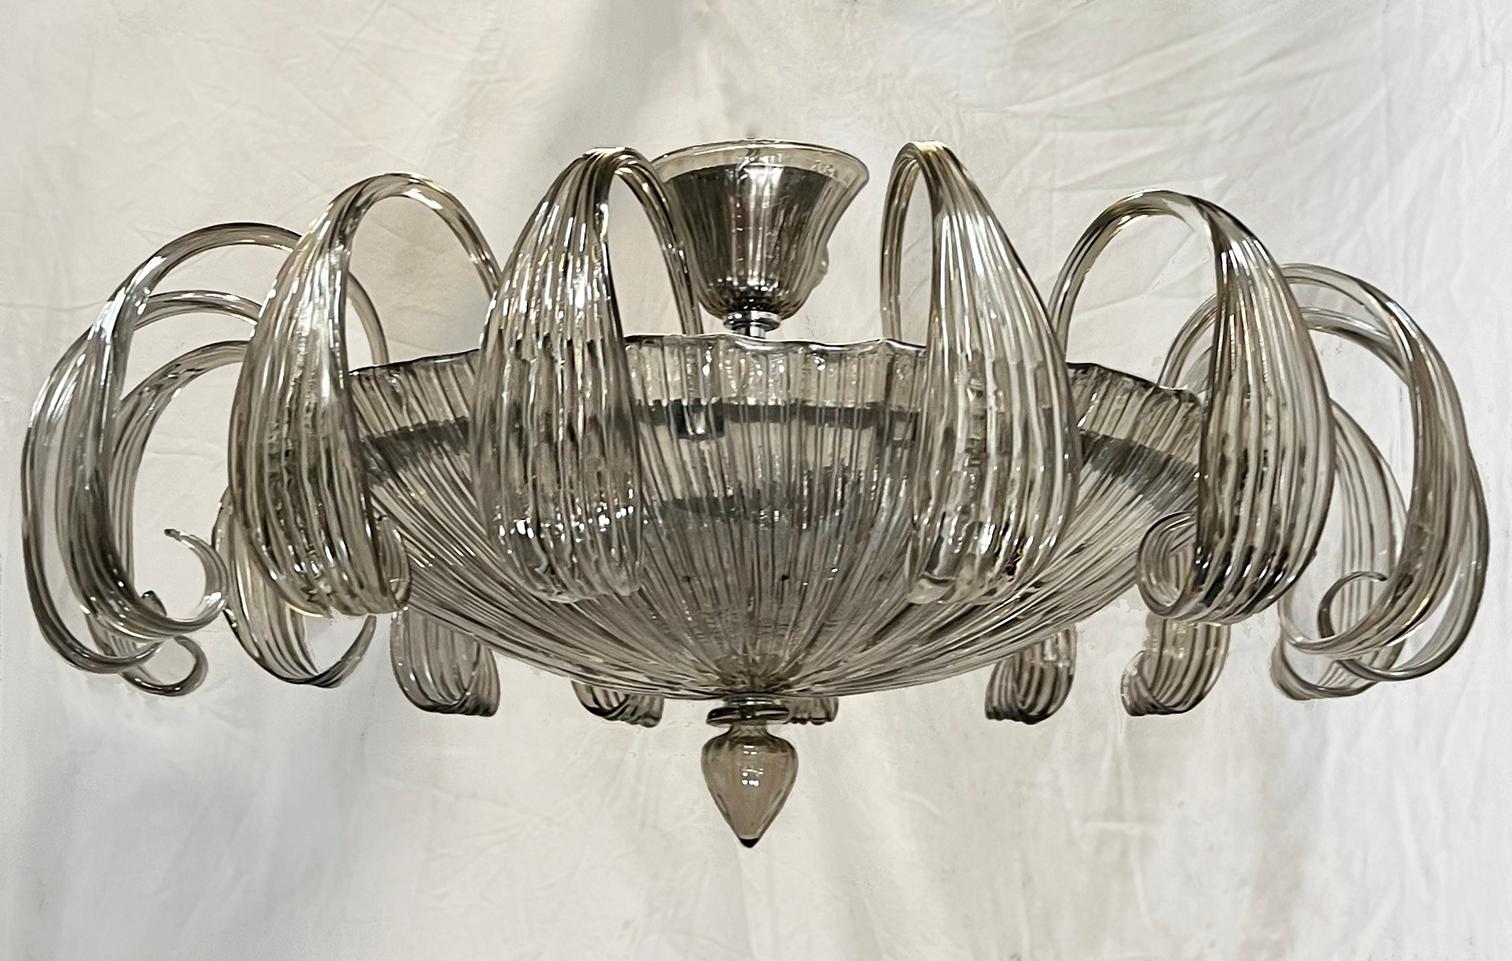 Ein italienischer Kronleuchter aus geblasenem Muranoglas aus den 1960er Jahren mit sechs Innenleuchten.

Abmessungen:
Durchmesser: 30